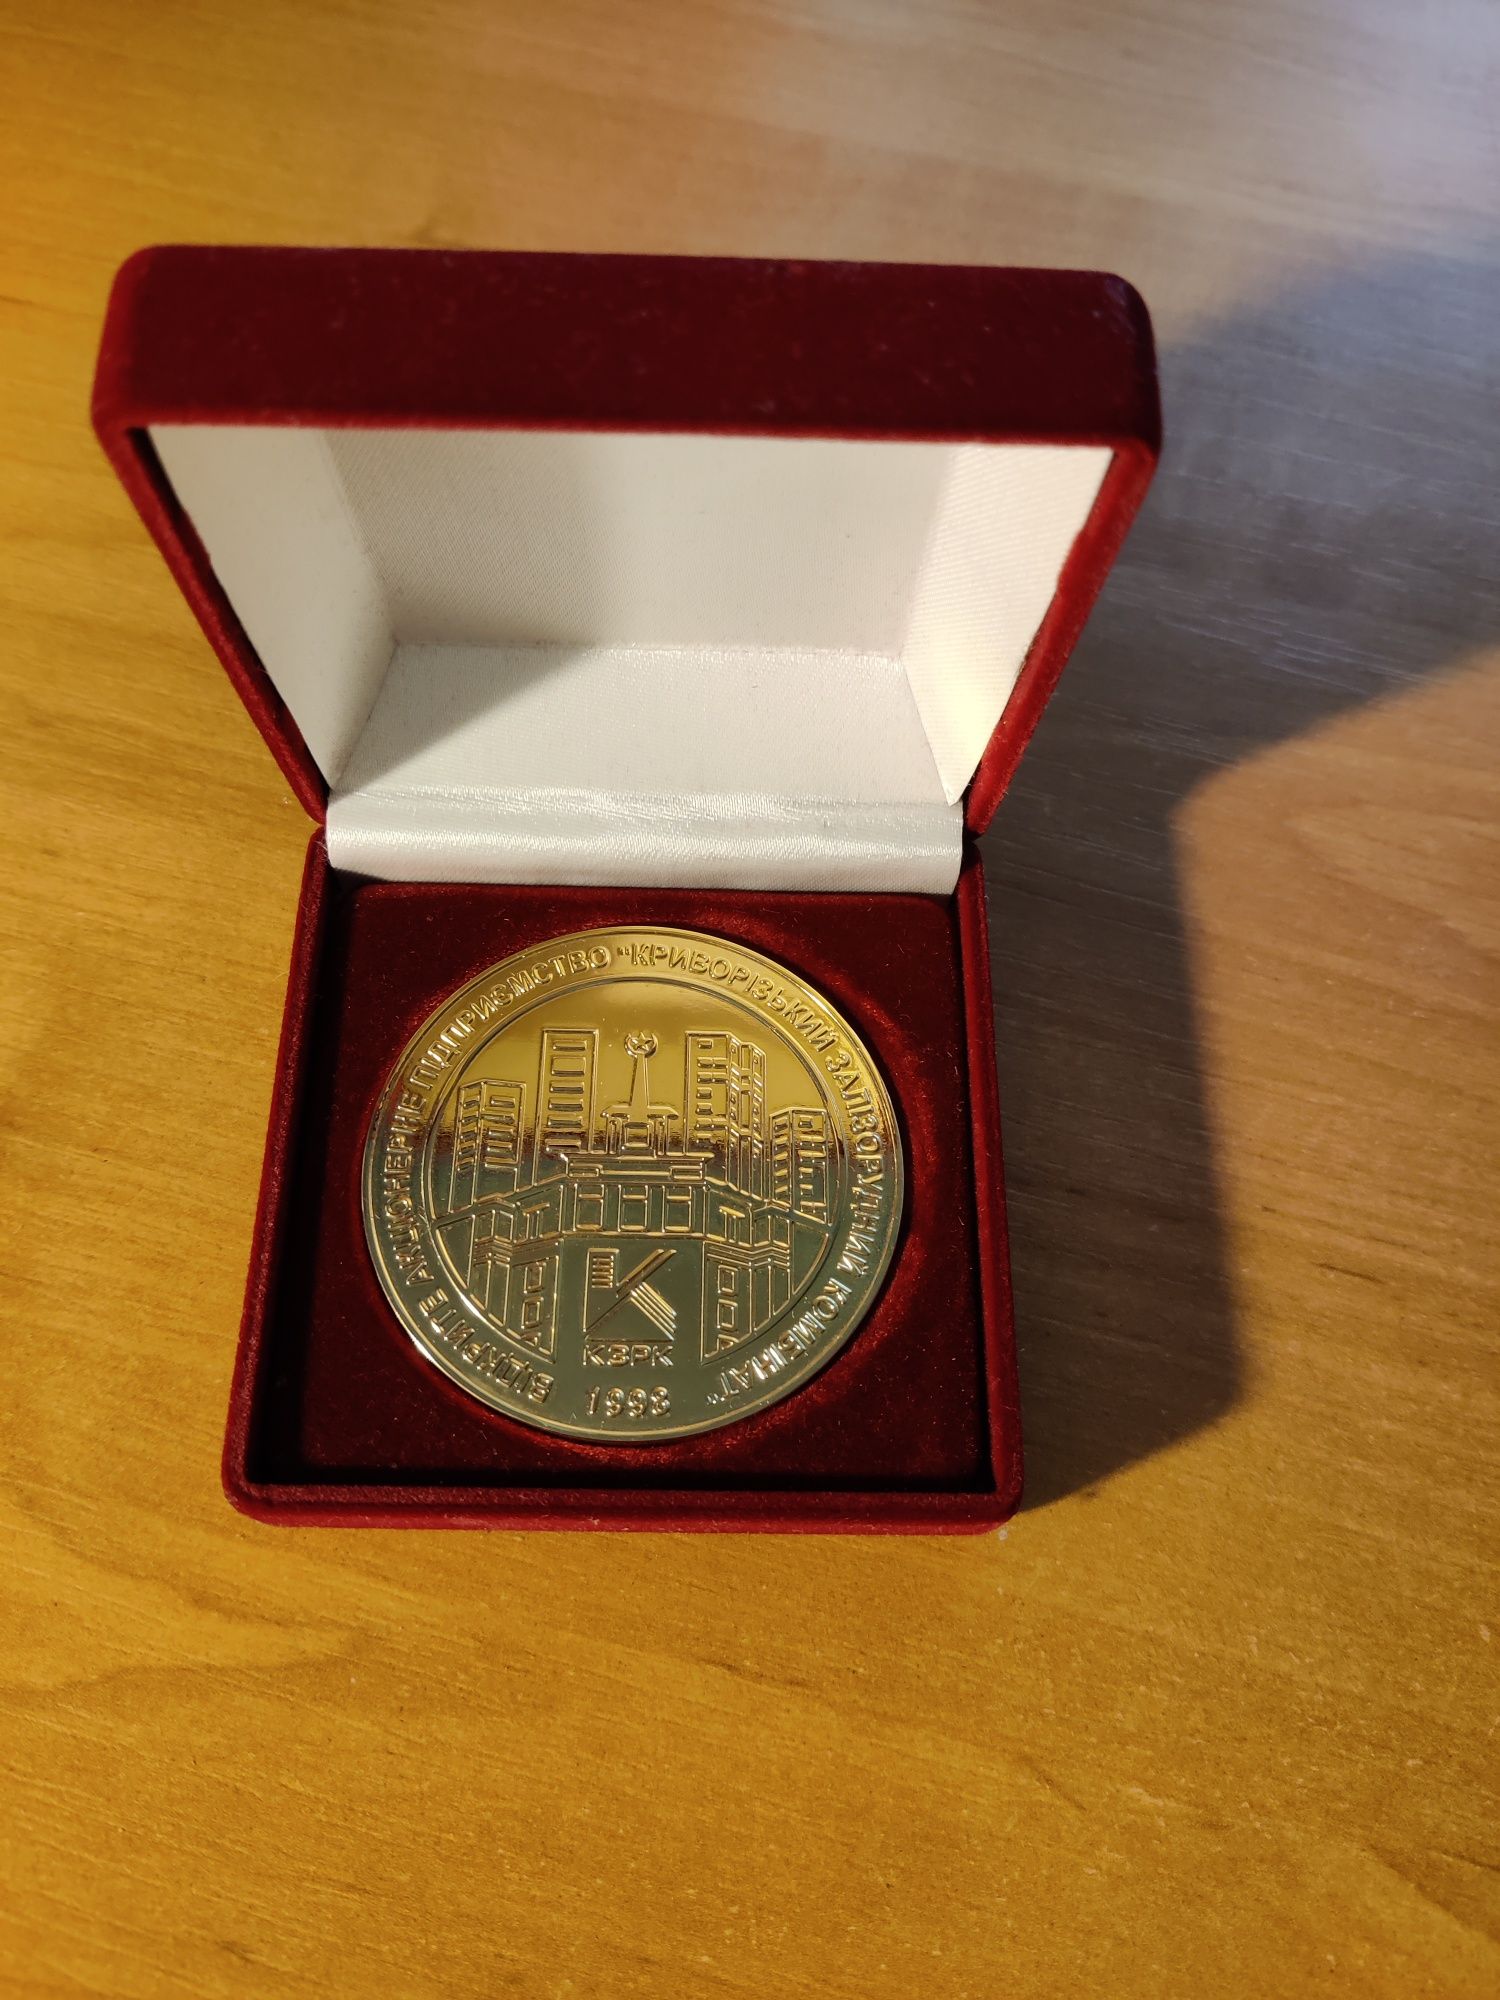 ВАП "КЗРК" 1998 медальйон